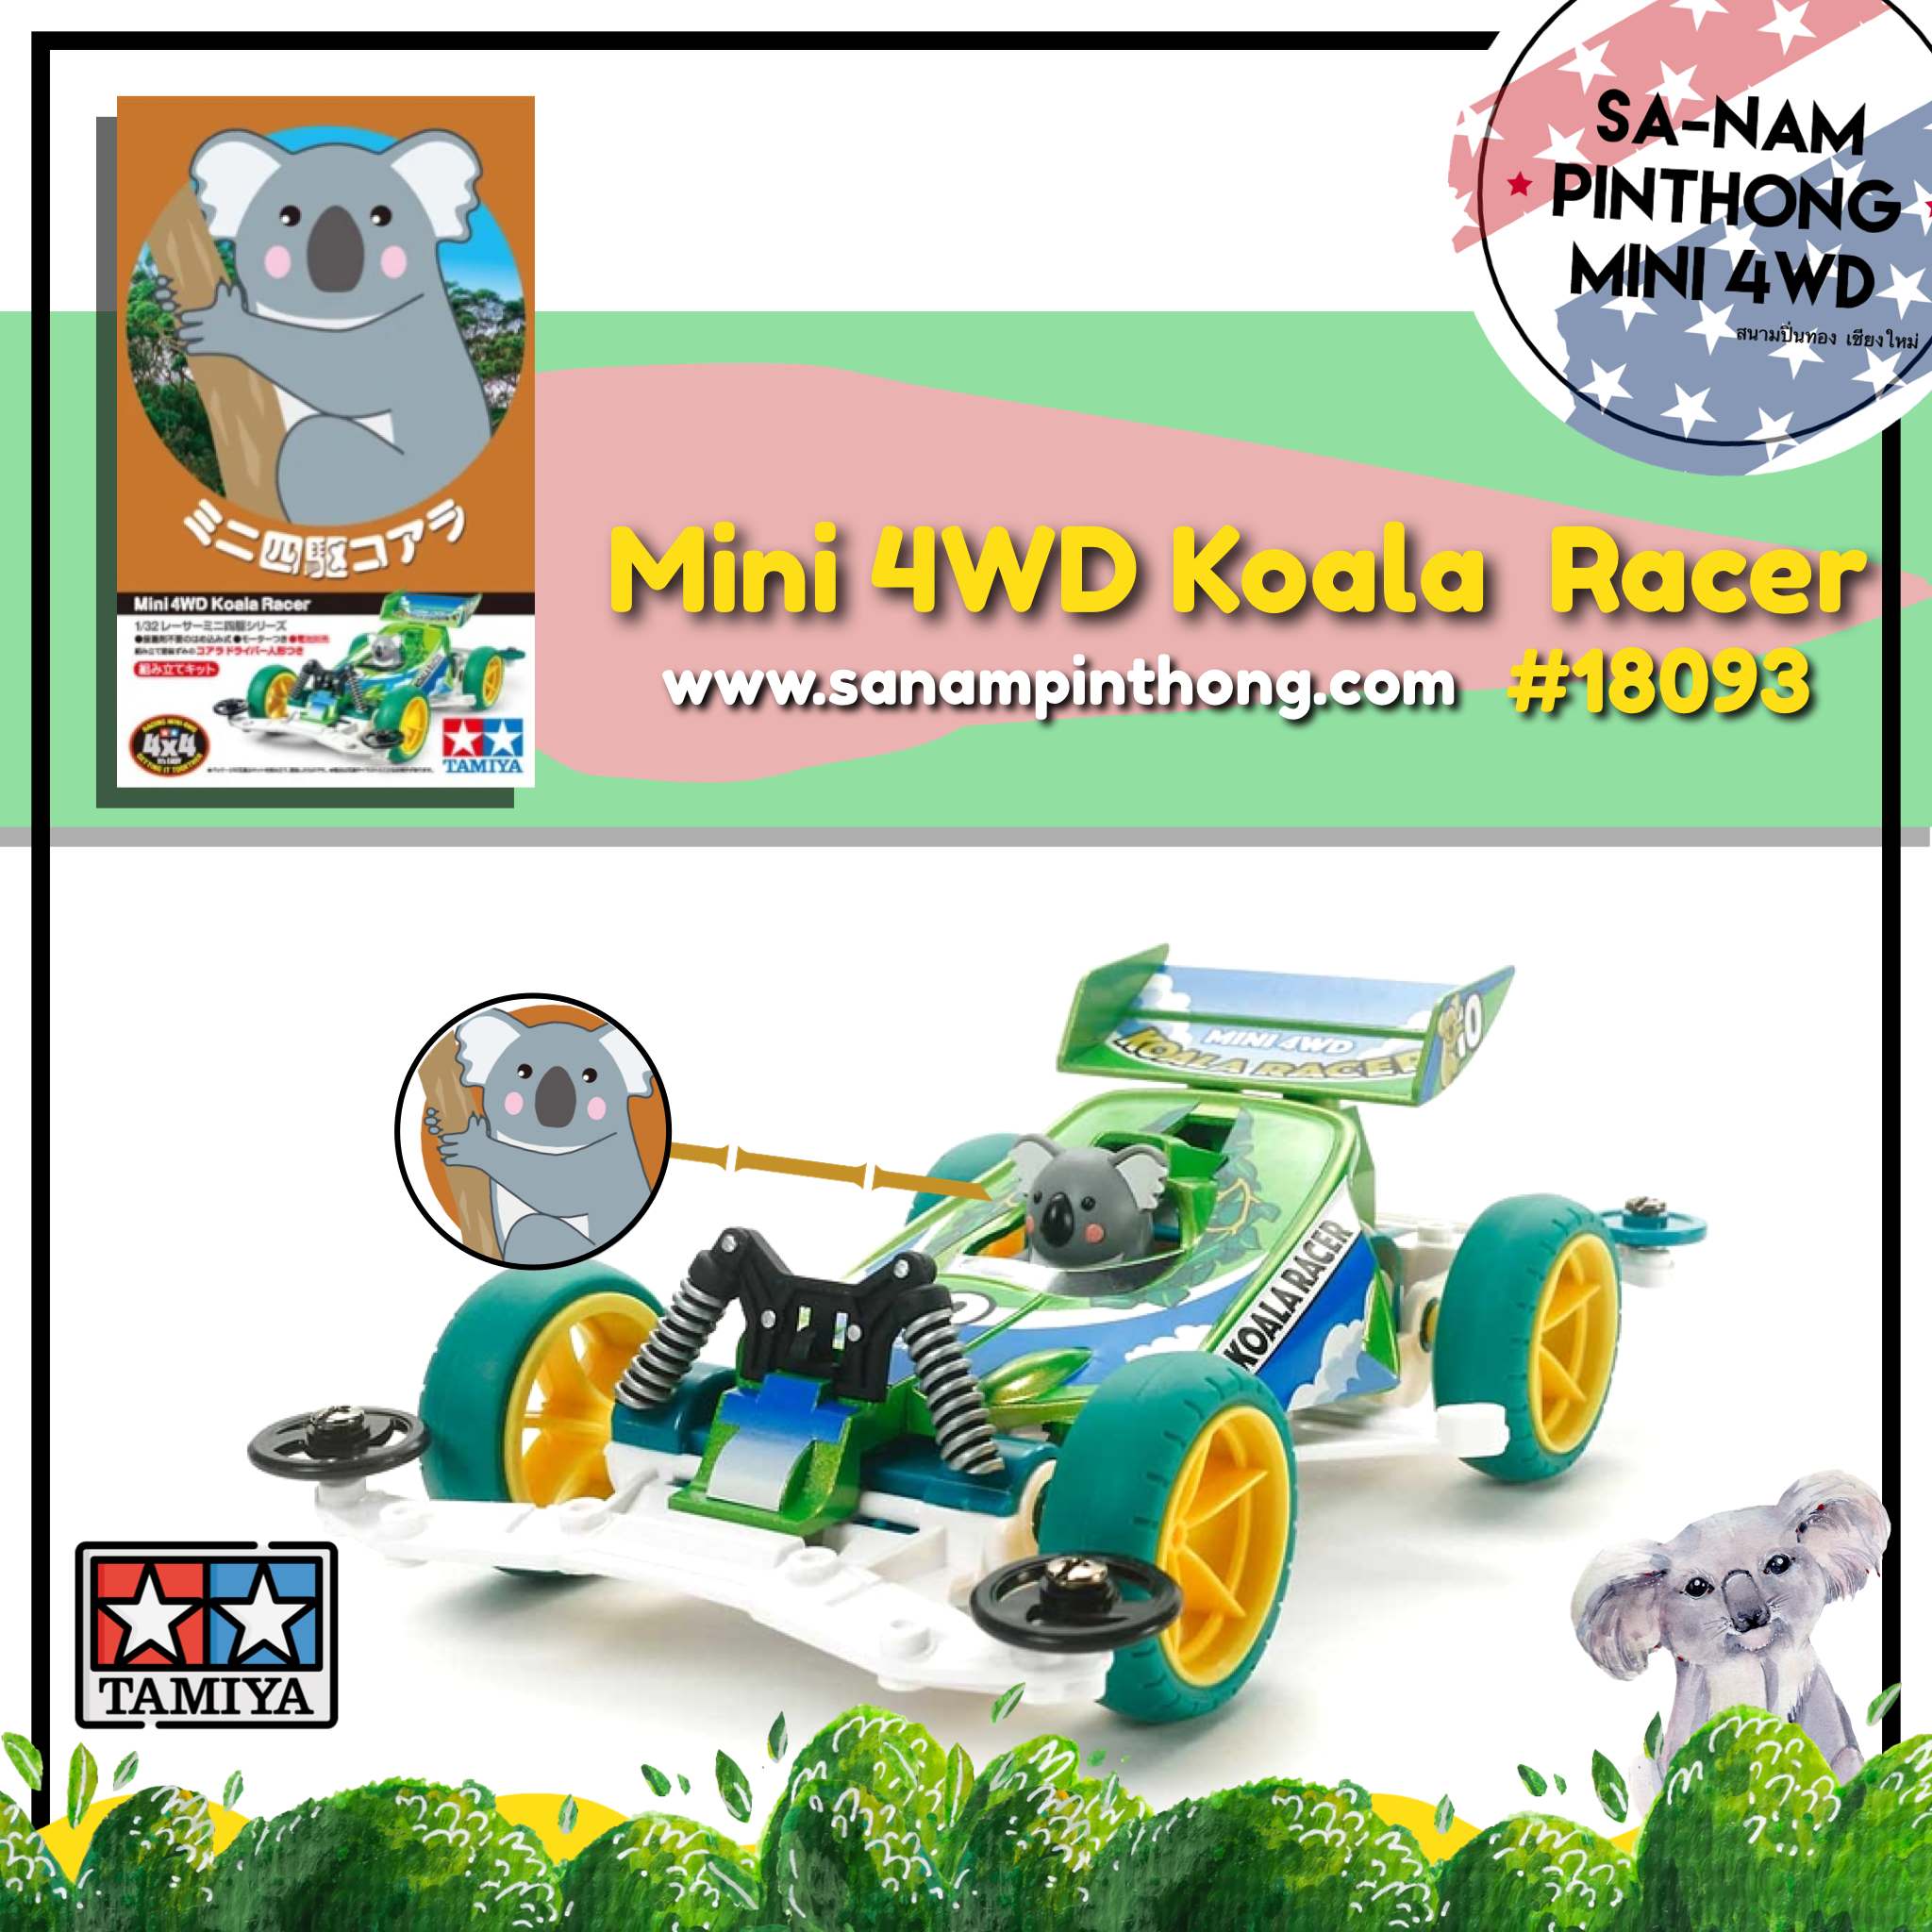 Mini 4WD - Tamiya Item #18093 Mini 4WD Koala Racer (Super-ll